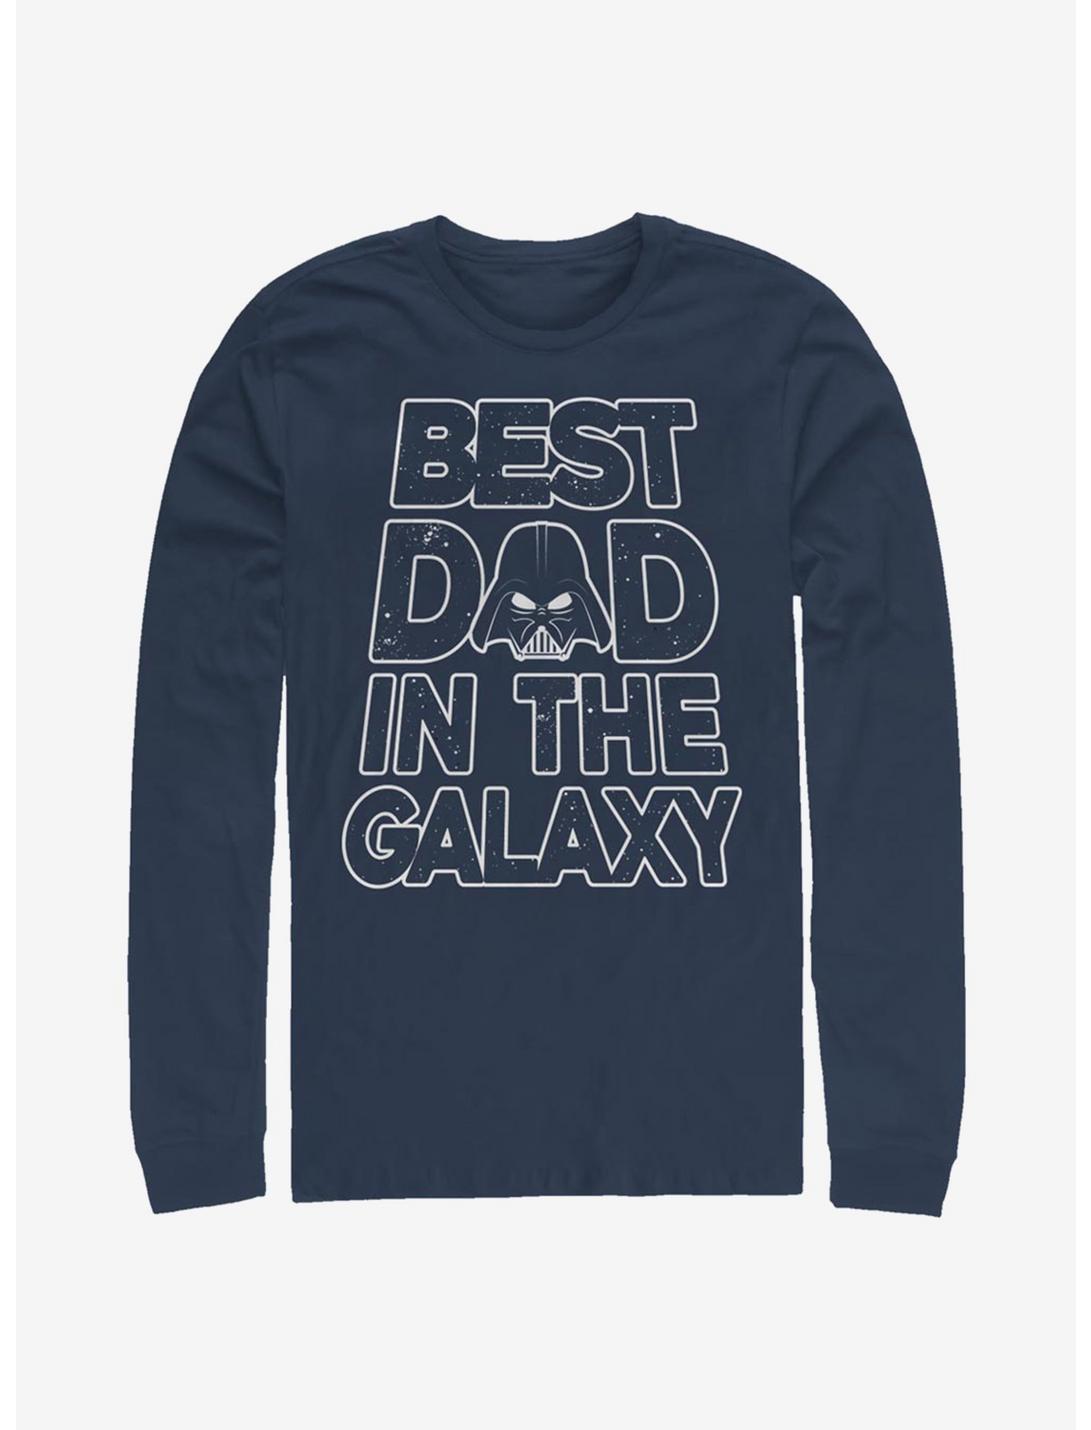 Star Wars Darth Vader Galaxy Dad Long-Sleeve T-Shirt, NAVY, hi-res